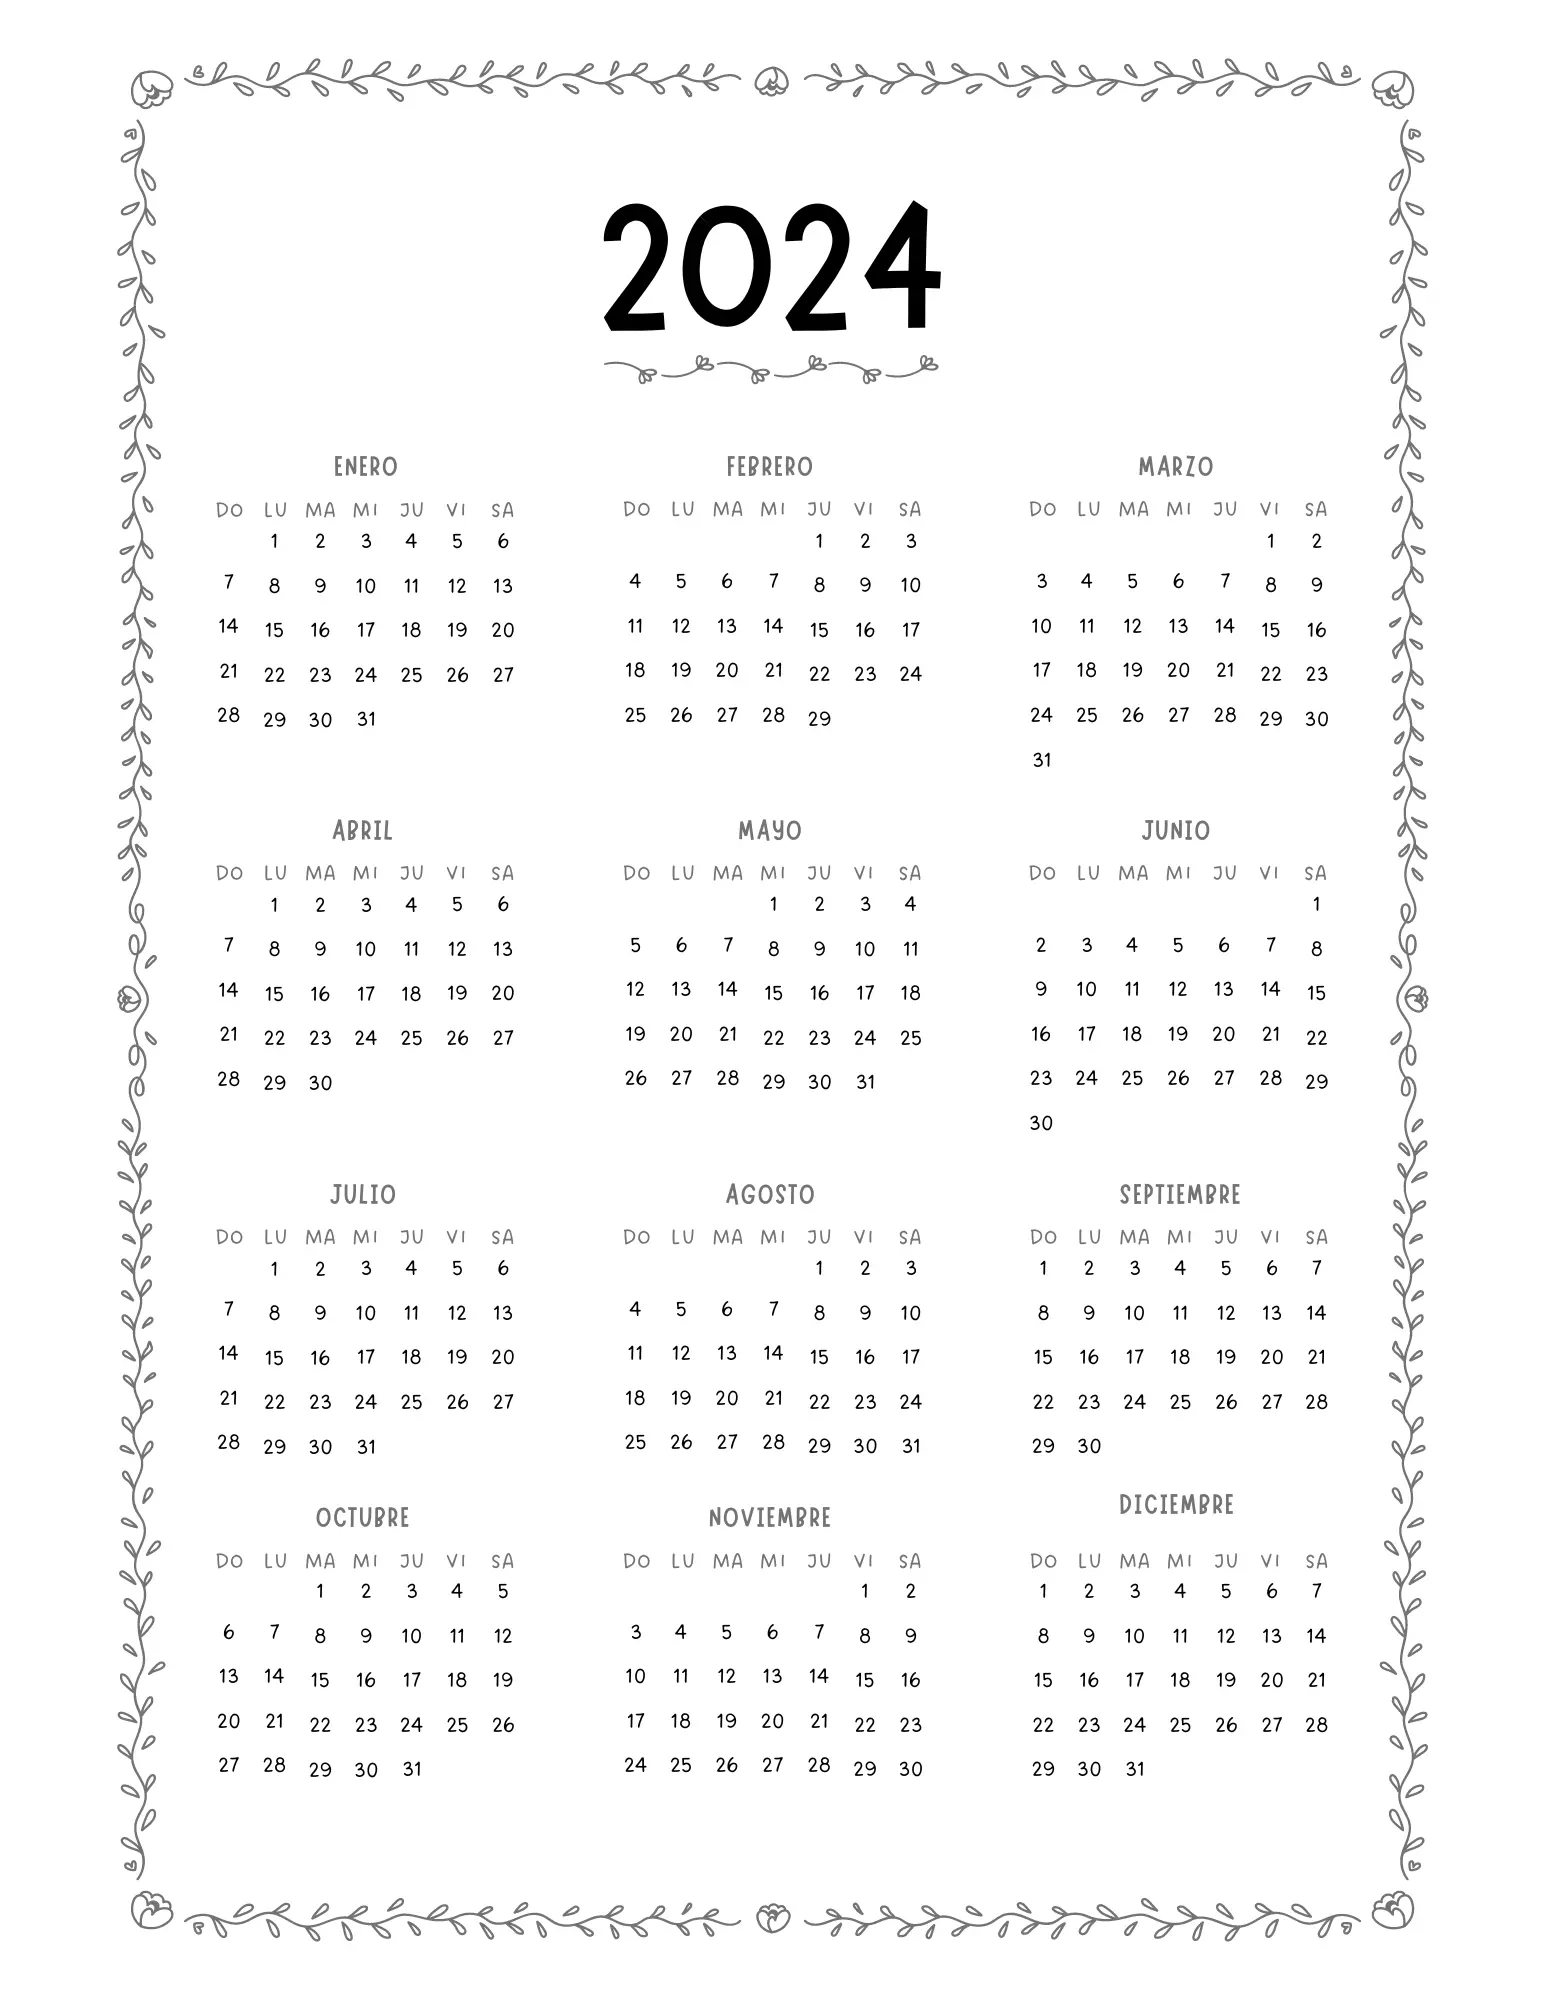 Un planificador anual para 2024 con cada mes separado y etiquetado con las fechas correspondientes.